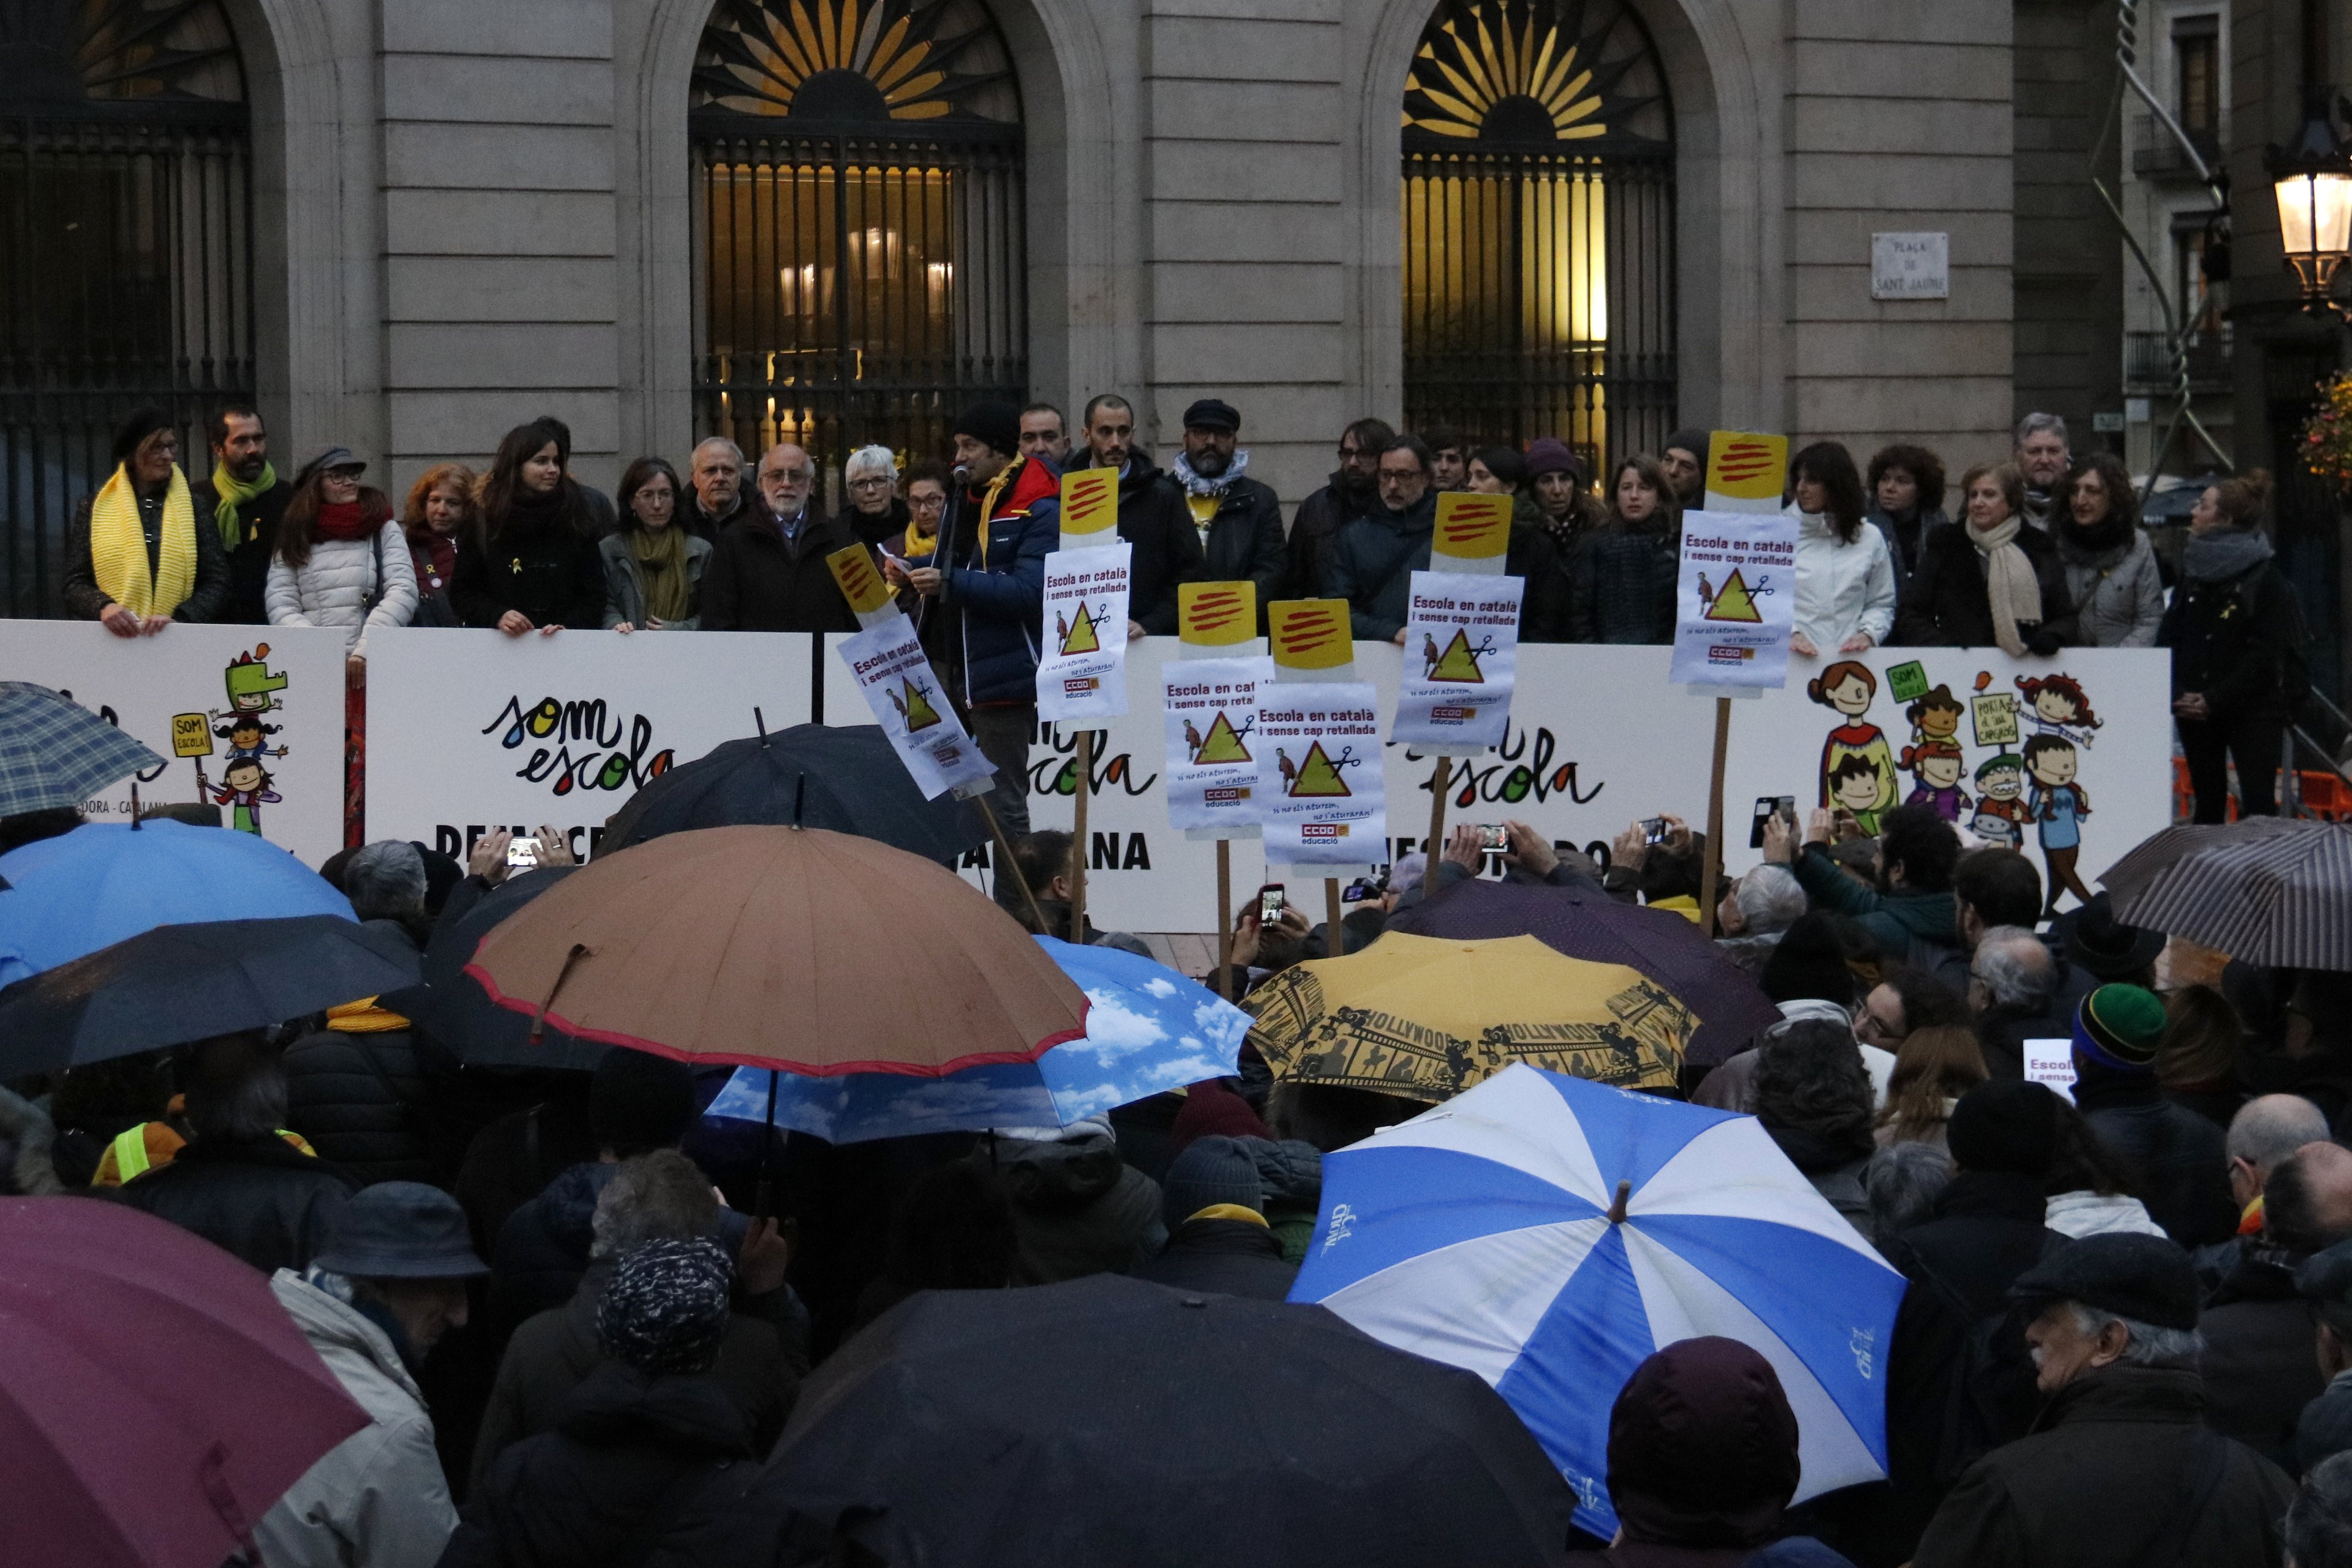 L'escola catalana es mobilitza per plantar cara a l'ofensiva contra la immersió